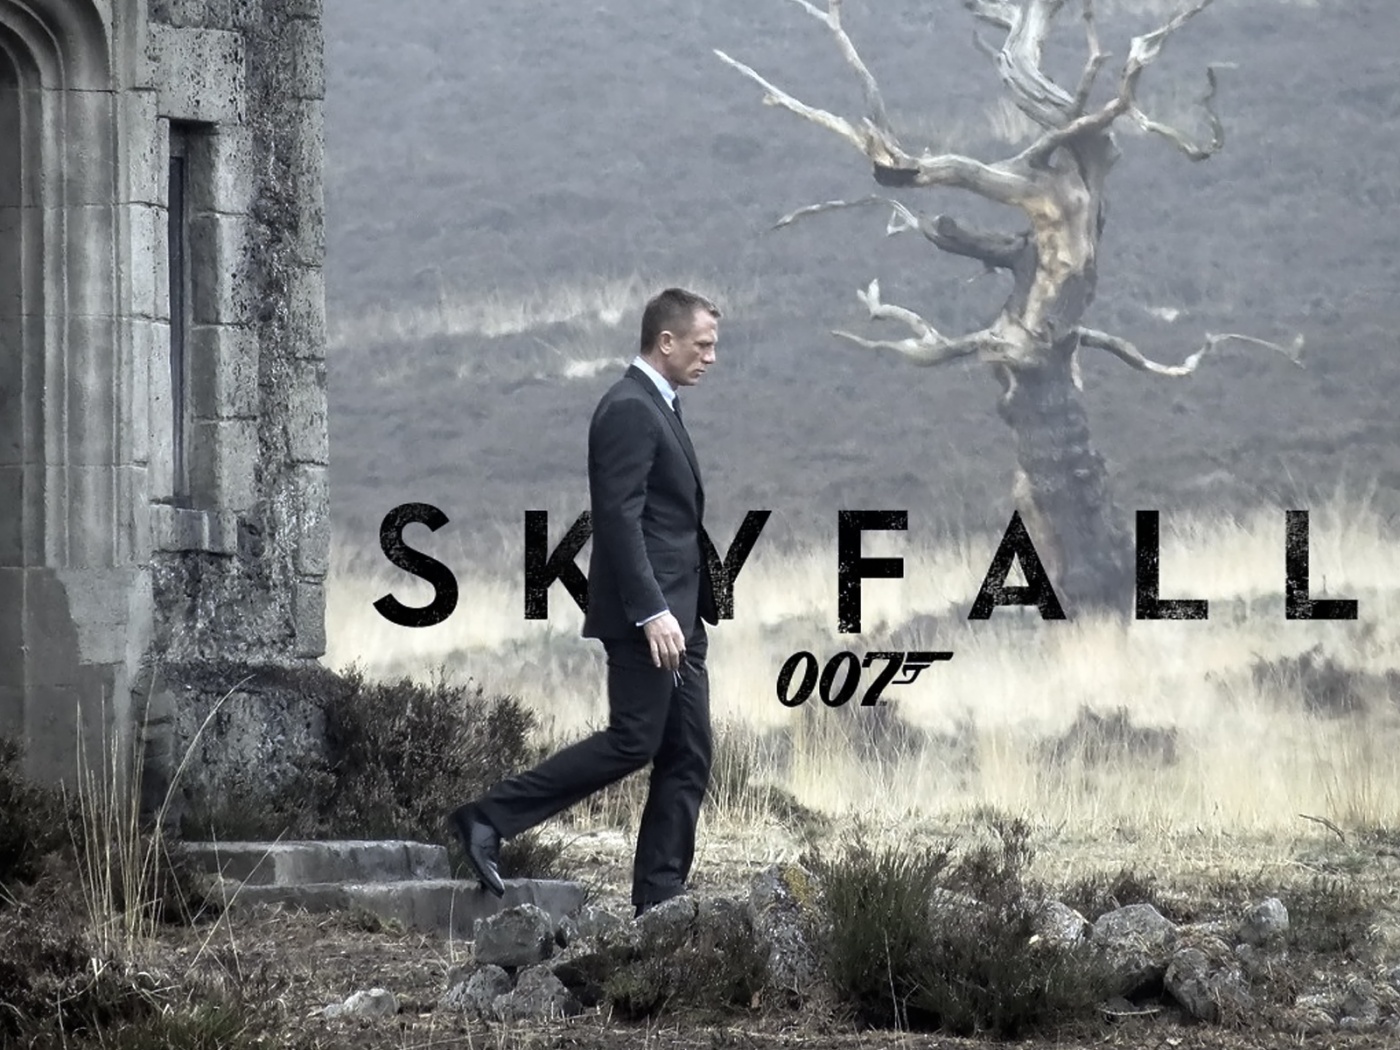 james bond 007 fond d'écran,police de caractère,texte,couverture de l'album,arbre,la photographie